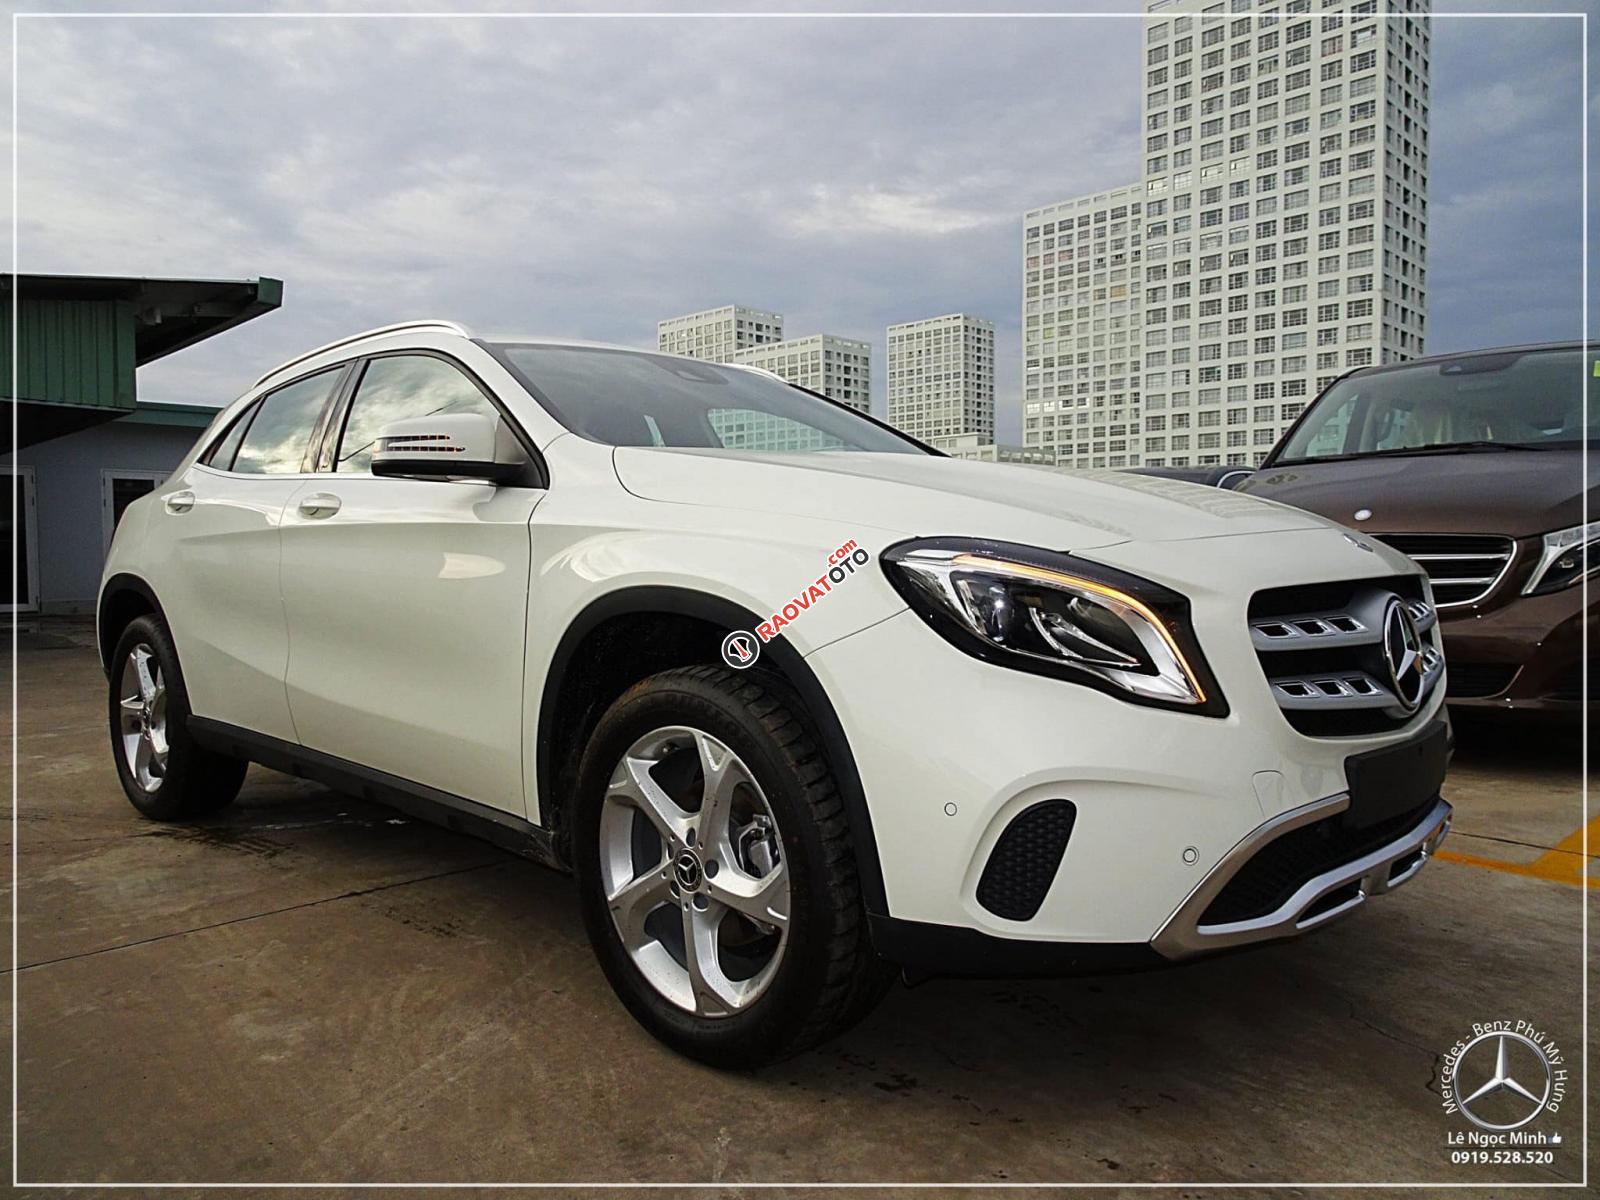 Bán Mercedes GLA 200 new - SUV 5 chỗ nhập khẩu - hỗ trợ ngân hàng 80%, xe giao ngay, LH 0919 528 520-10